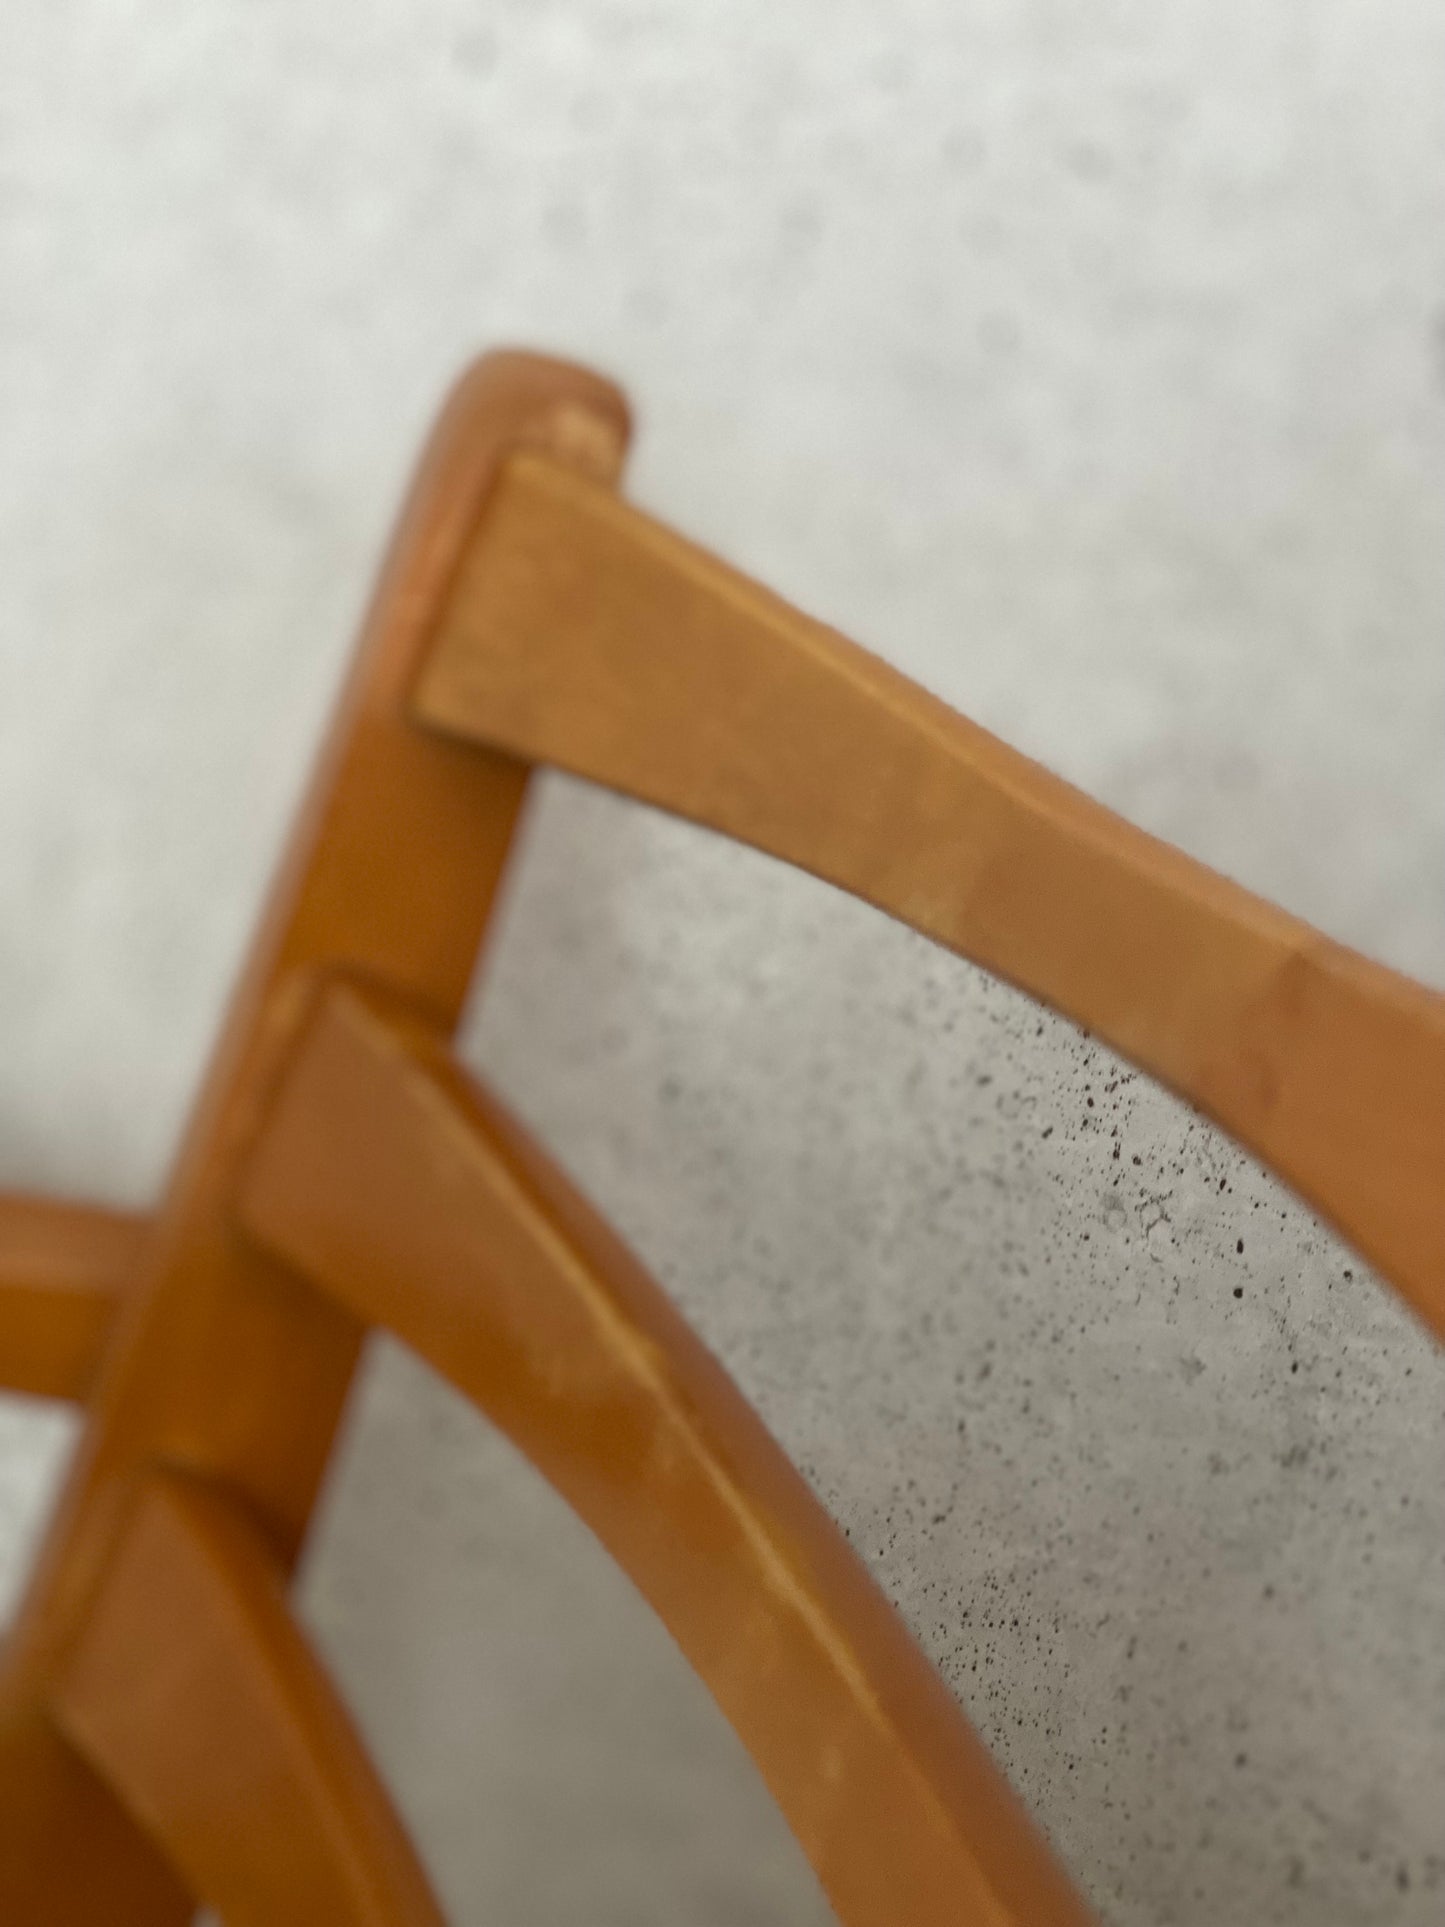 Chaise / fauteuil vintage